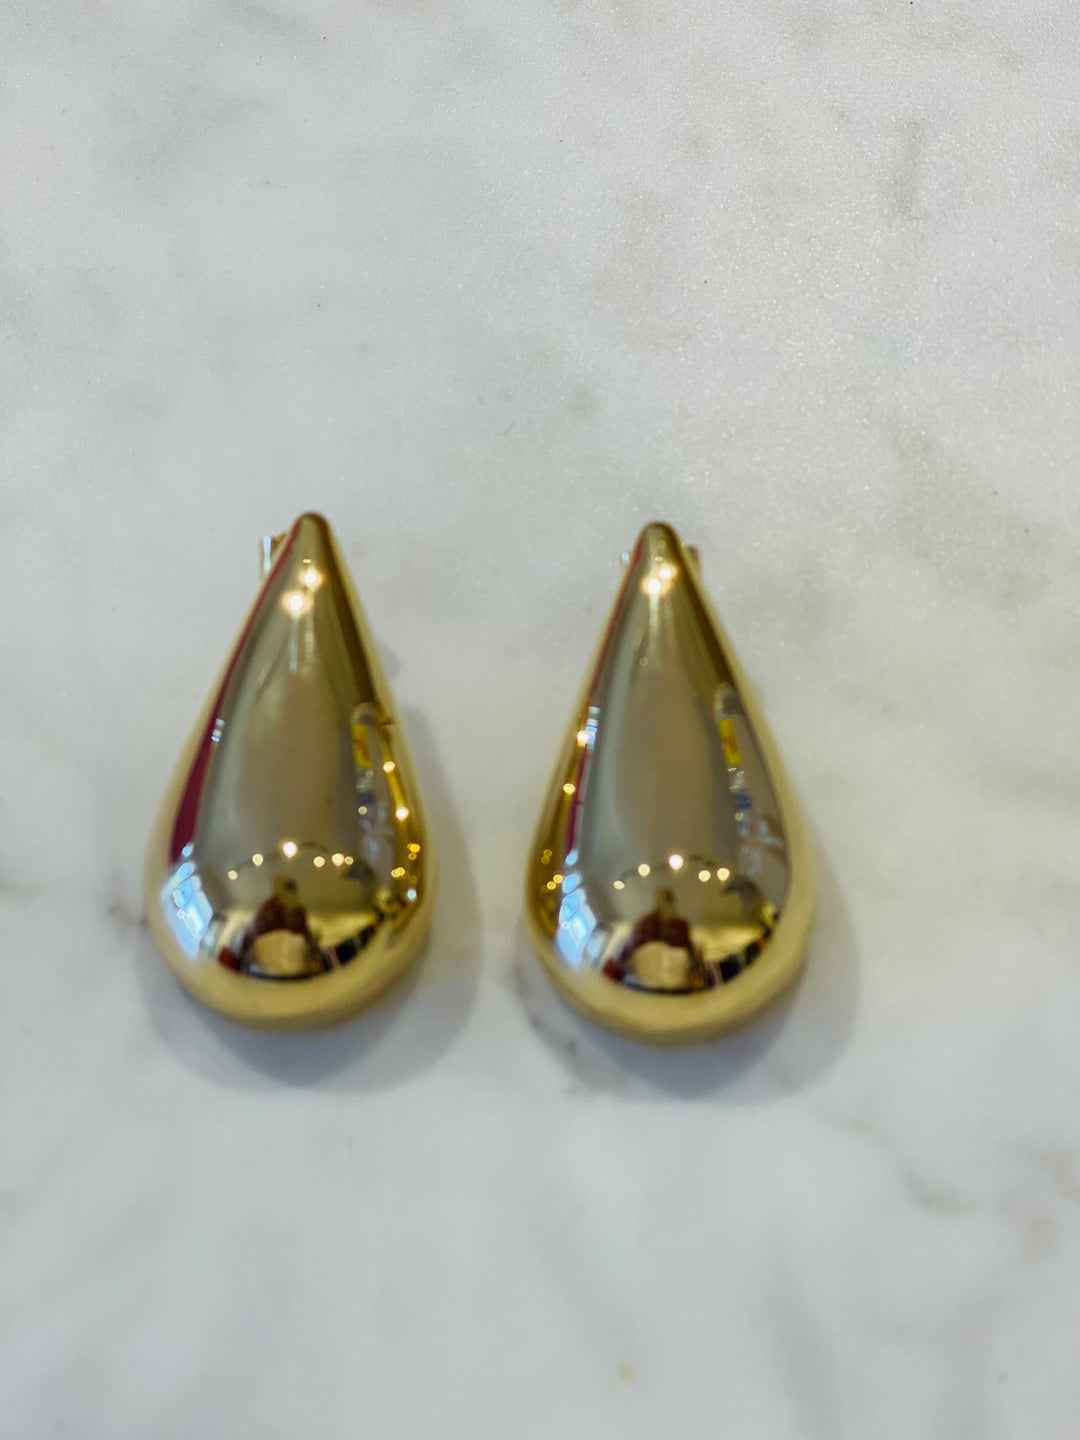 Giant Teardrop Earrings - Gold